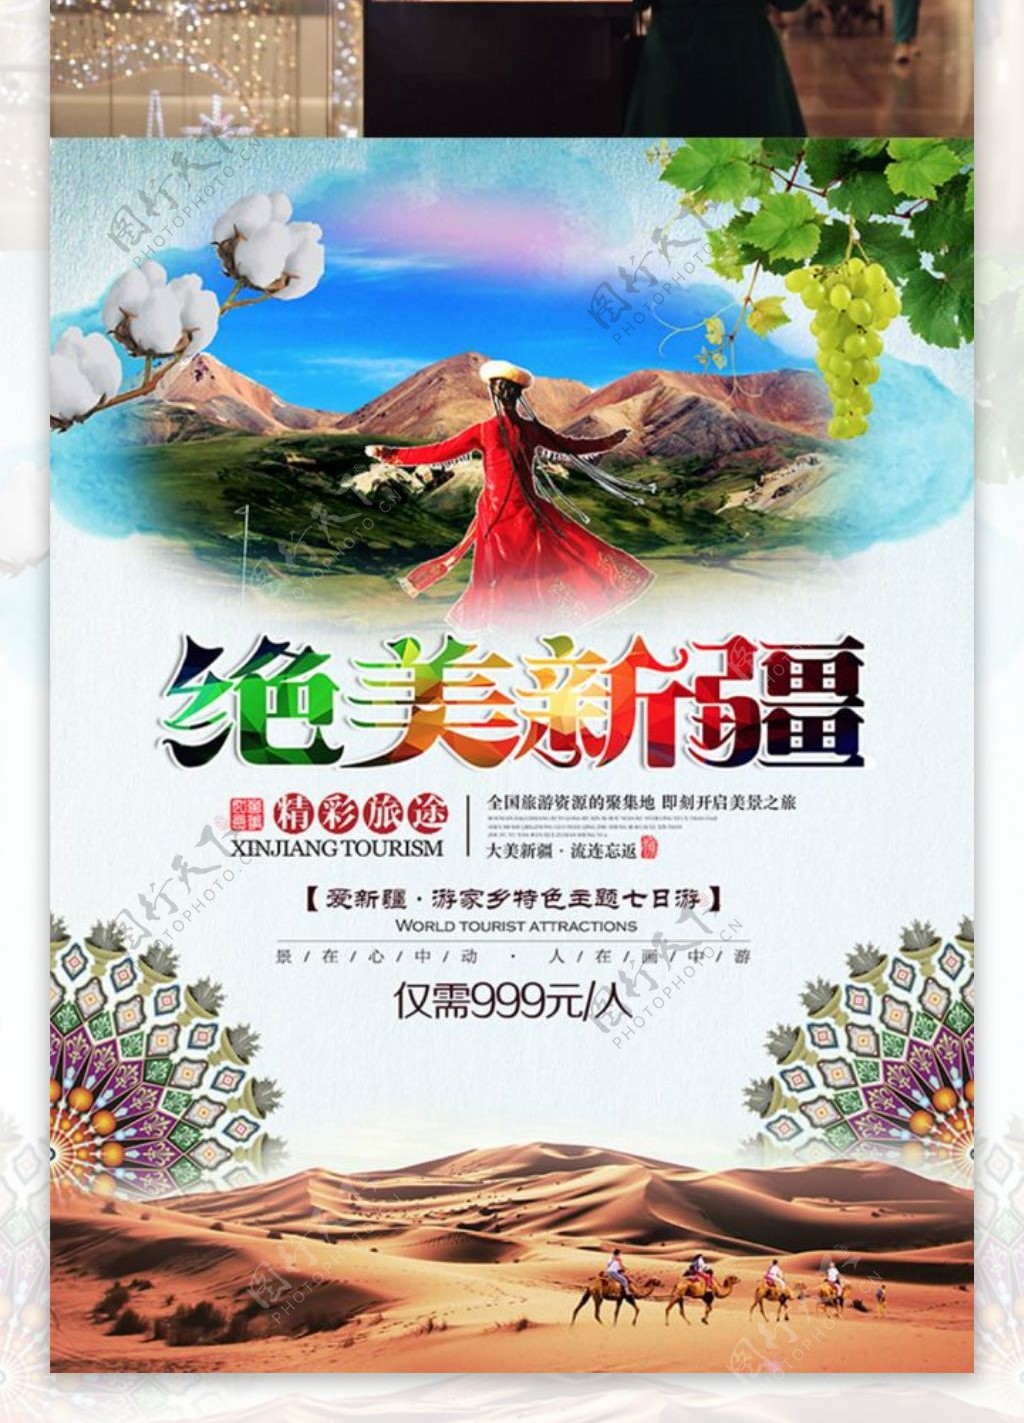 绝美新疆旅游宣传海报